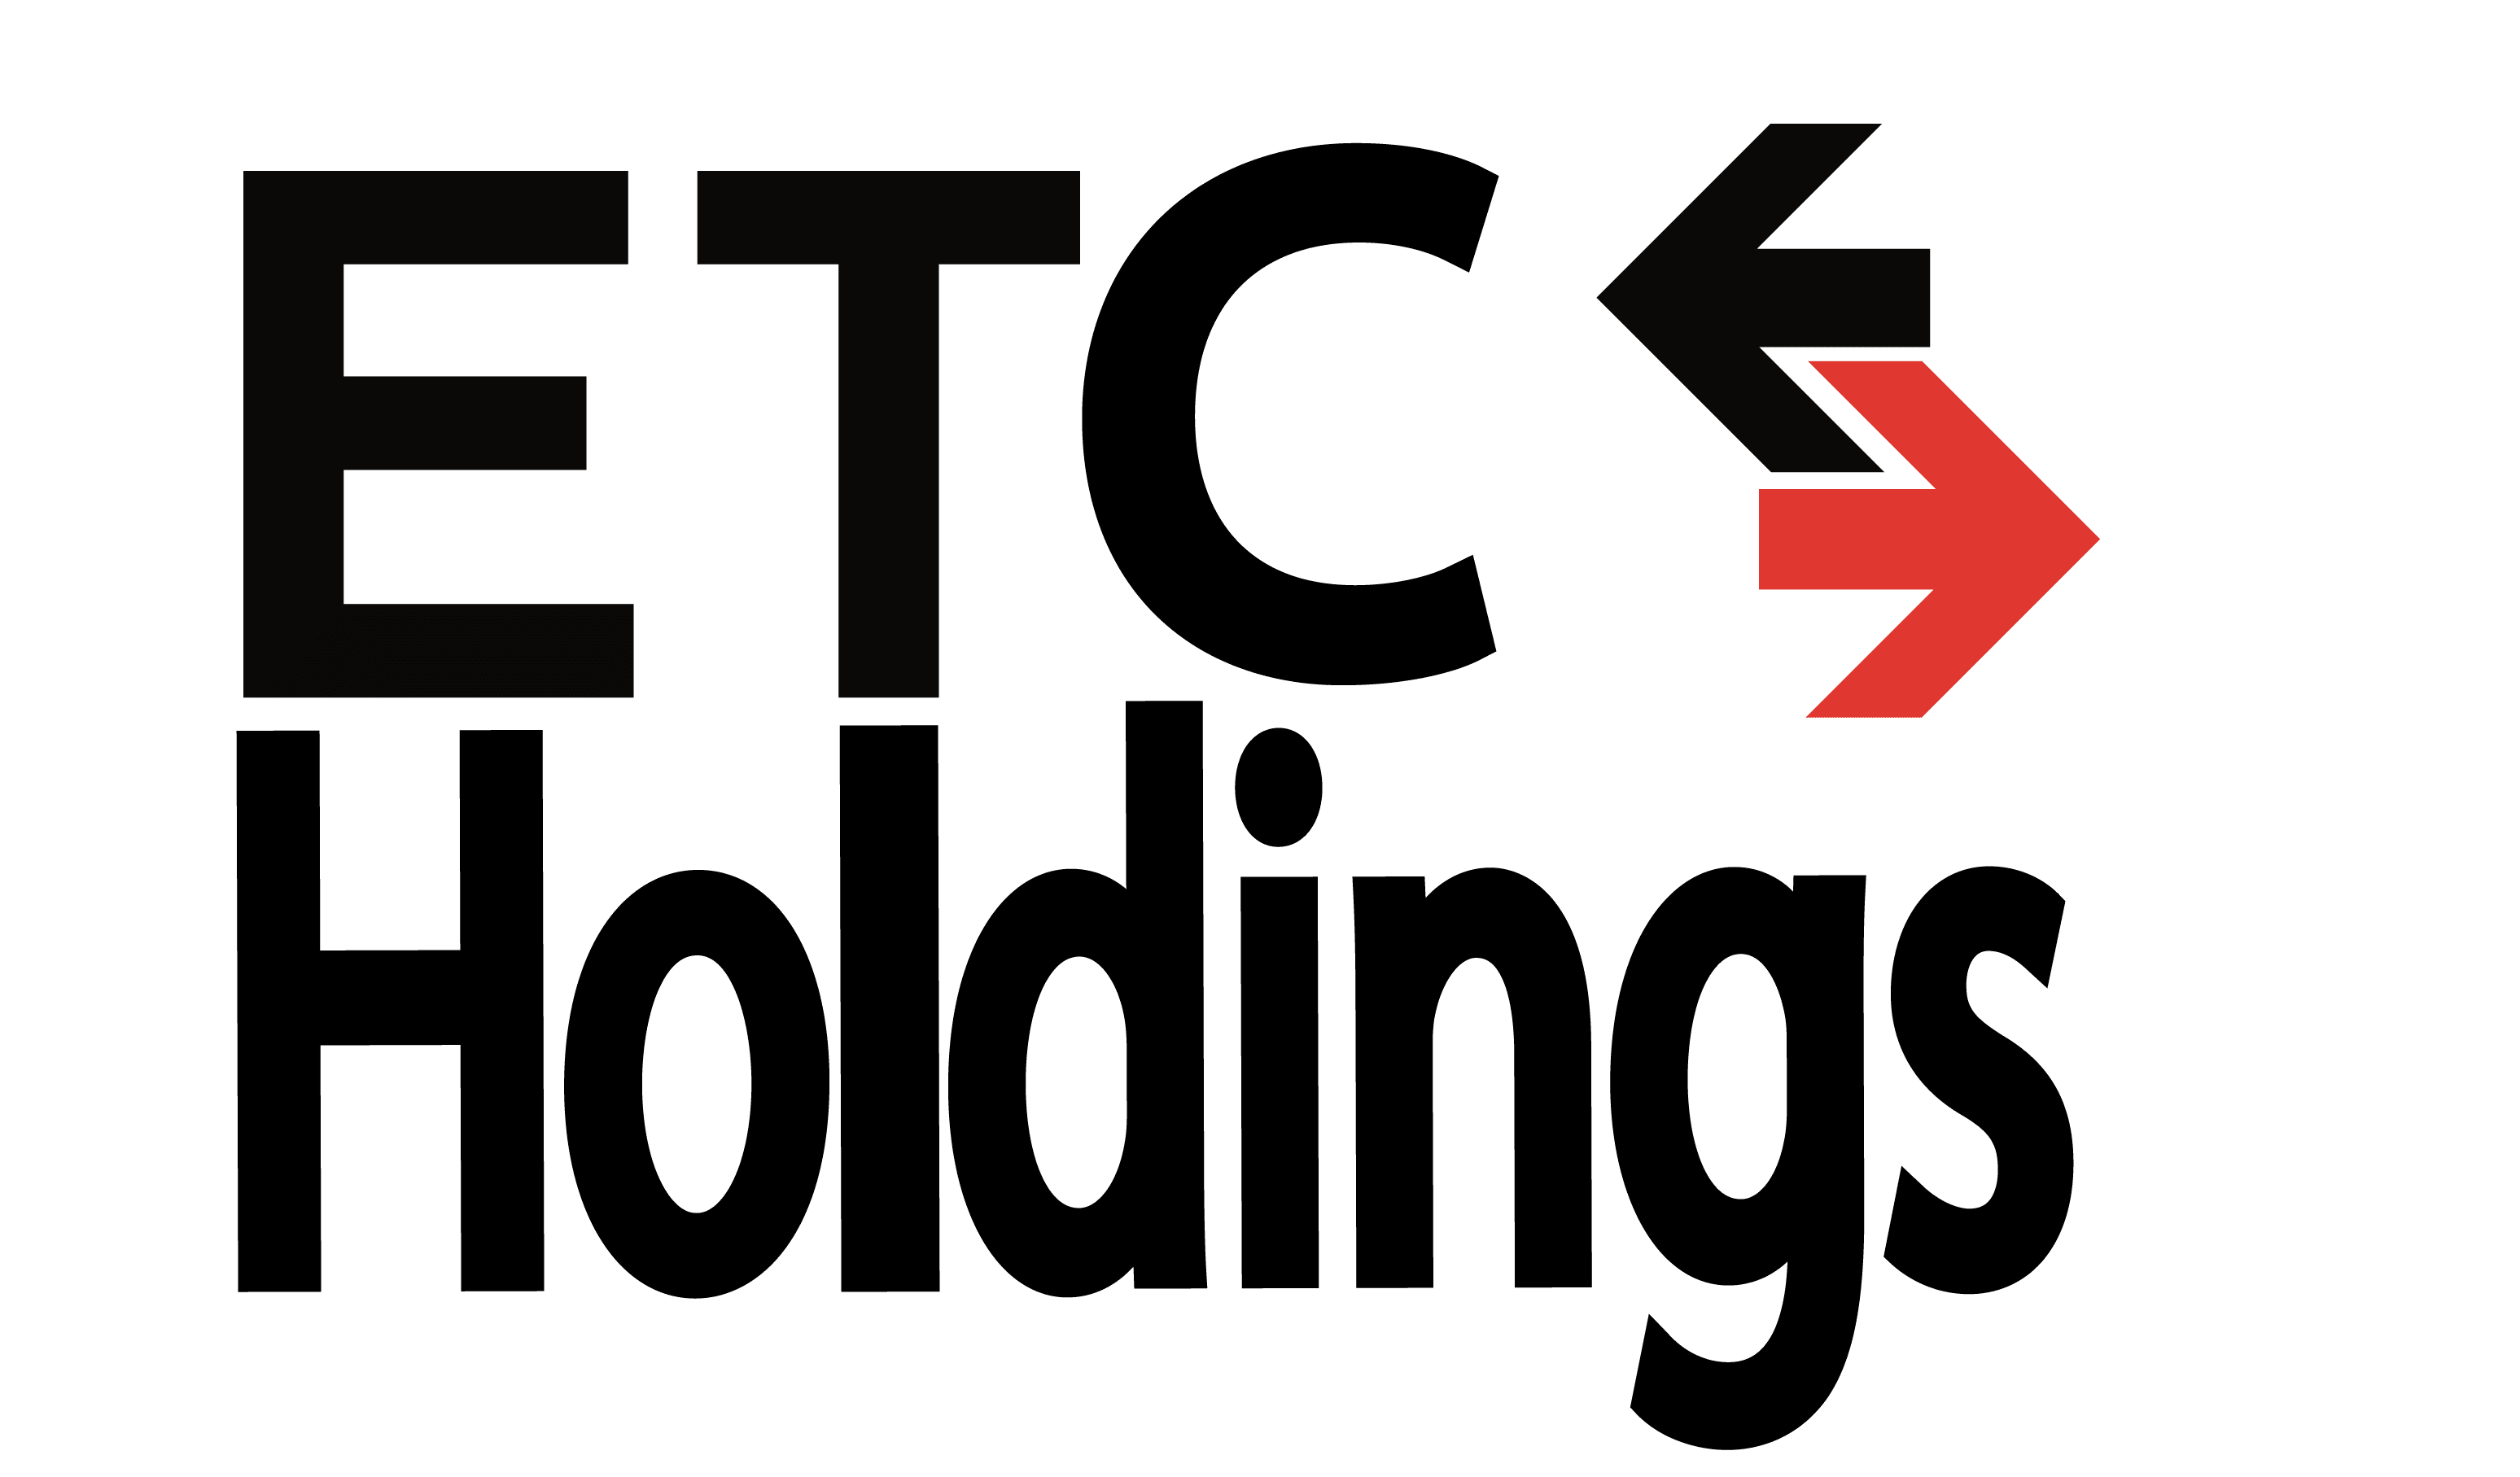 Etc Holdings